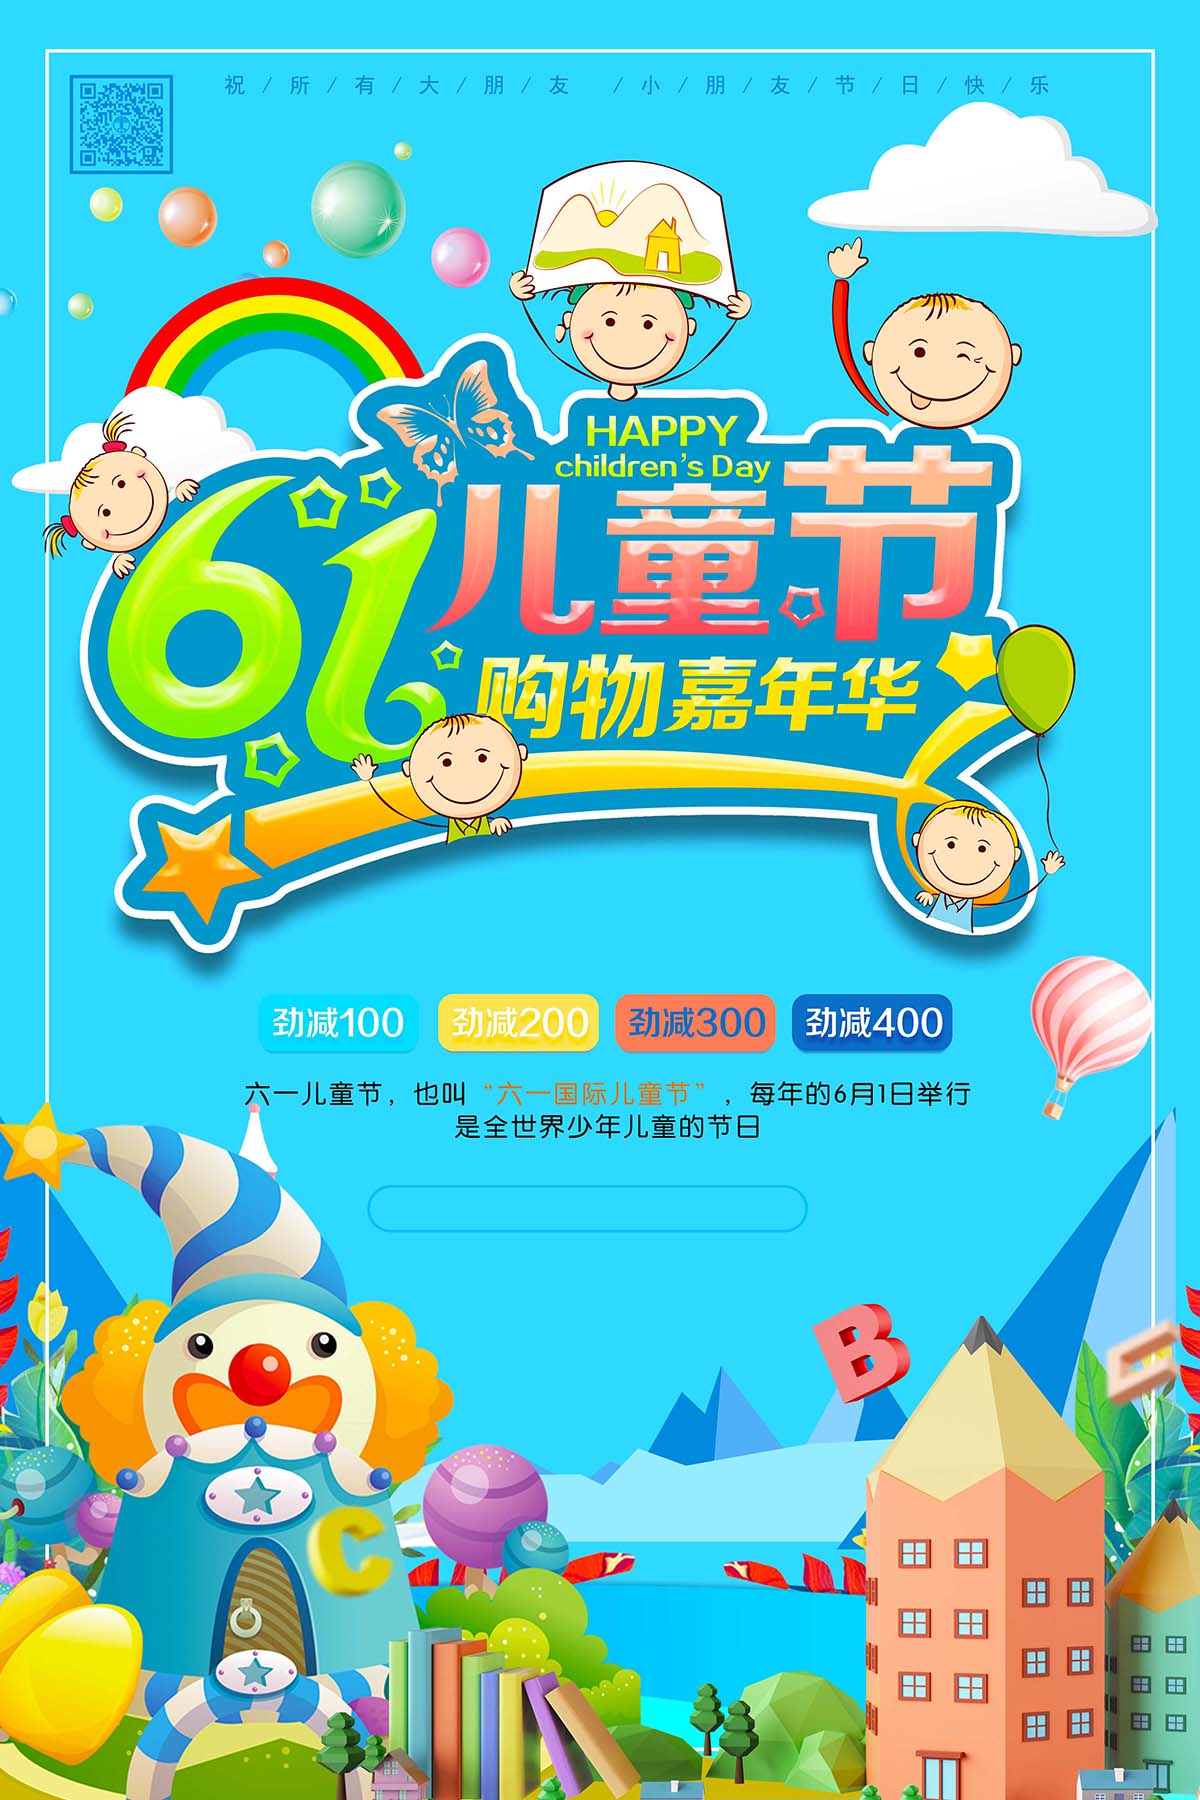 61六一儿童节购物嘉年华促销海报设计PSD源文件